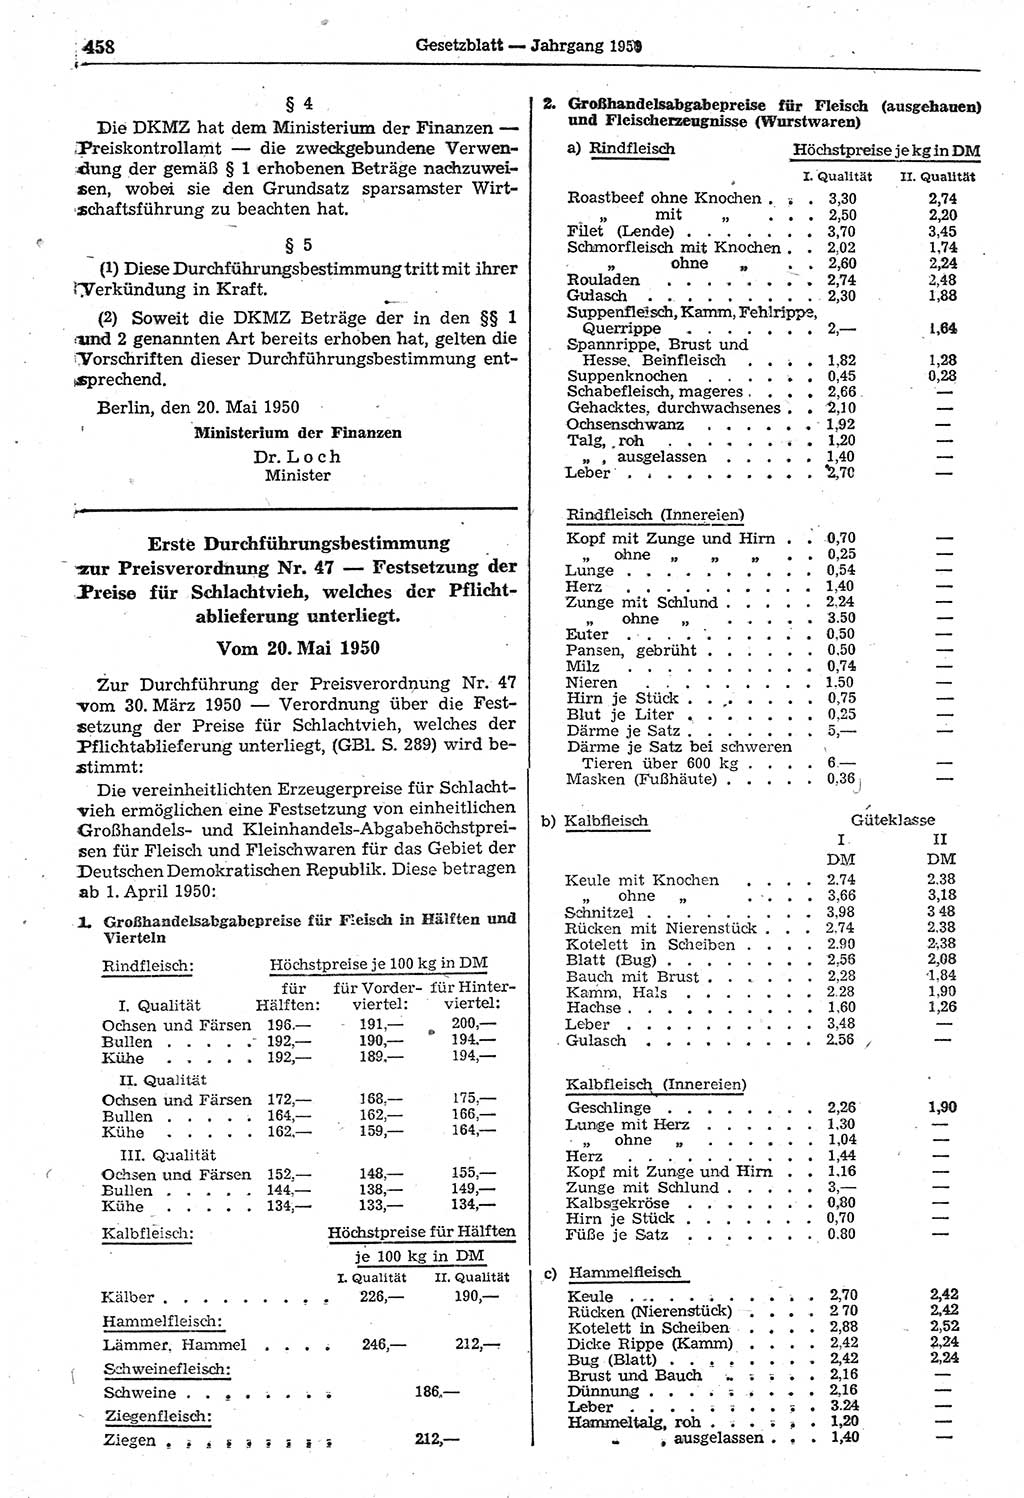 Gesetzblatt (GBl.) der Deutschen Demokratischen Republik (DDR) 1950, Seite 458 (GBl. DDR 1950, S. 458)